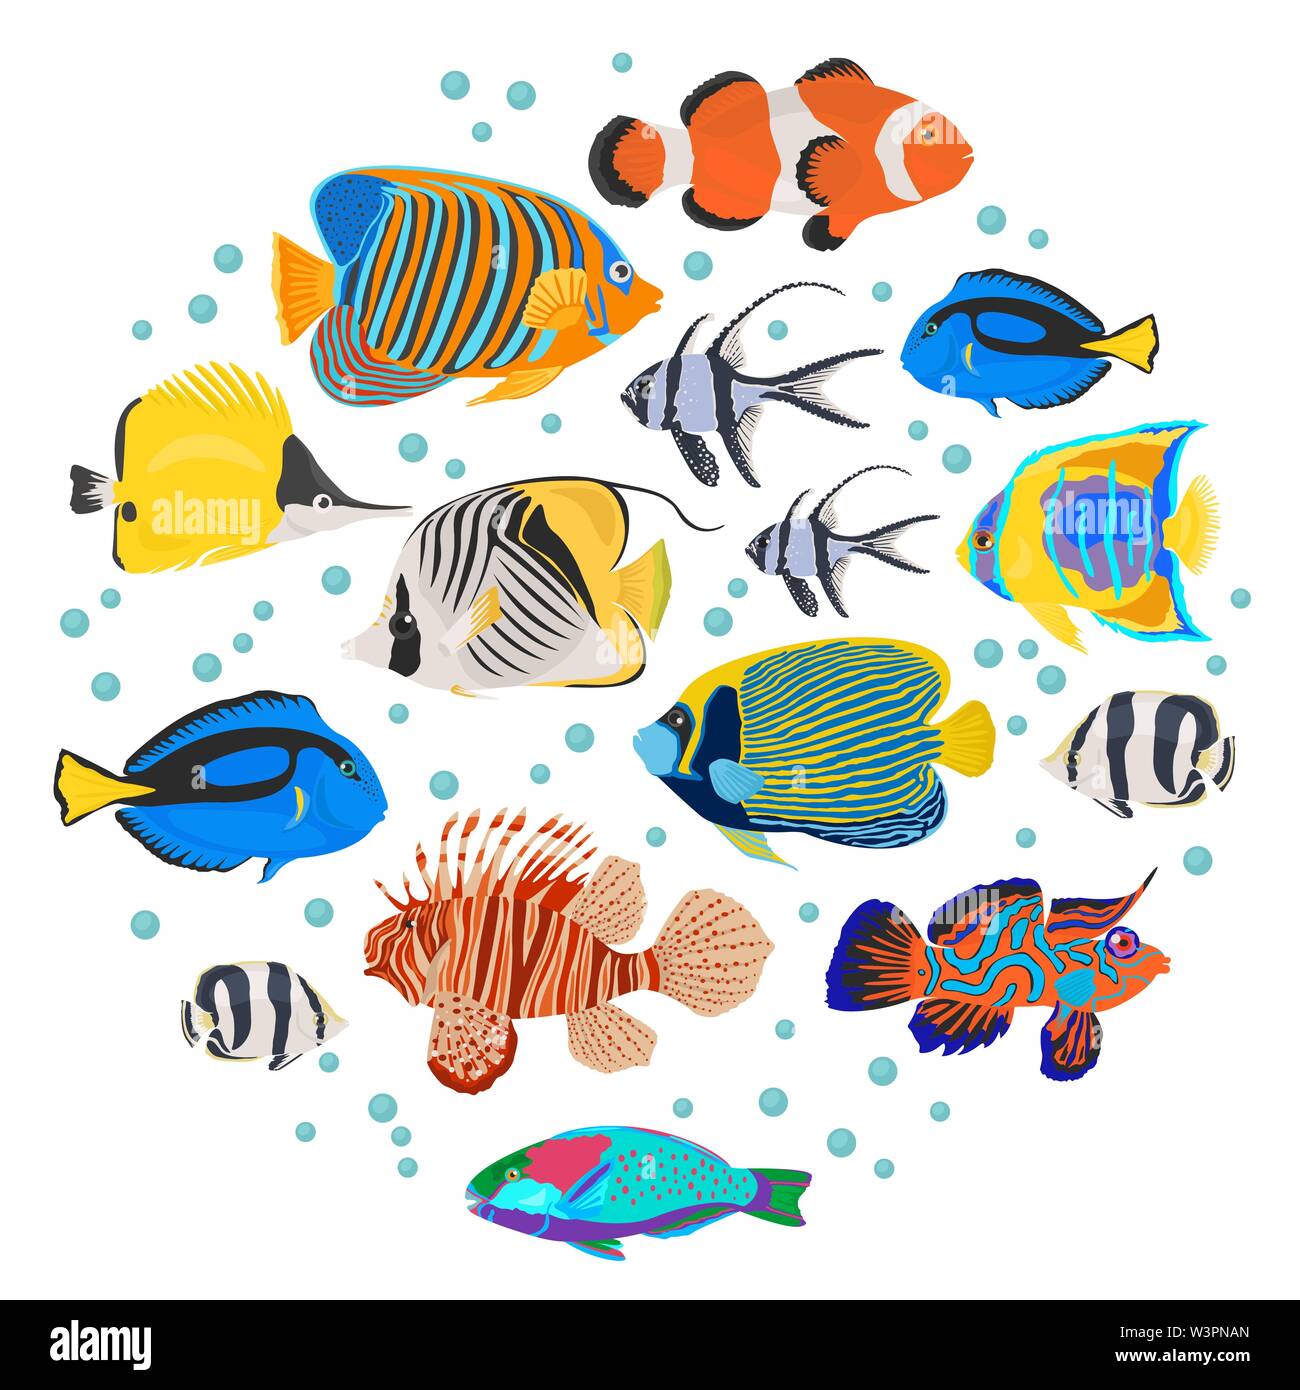 Las razas de peces de acuario de agua dulce conjunto de iconos de estilo plano aislado en blanco. Los arrecifes de coral. Cree su propio infográfico sobre pet. Ilustración vectorial Ilustración del Vector